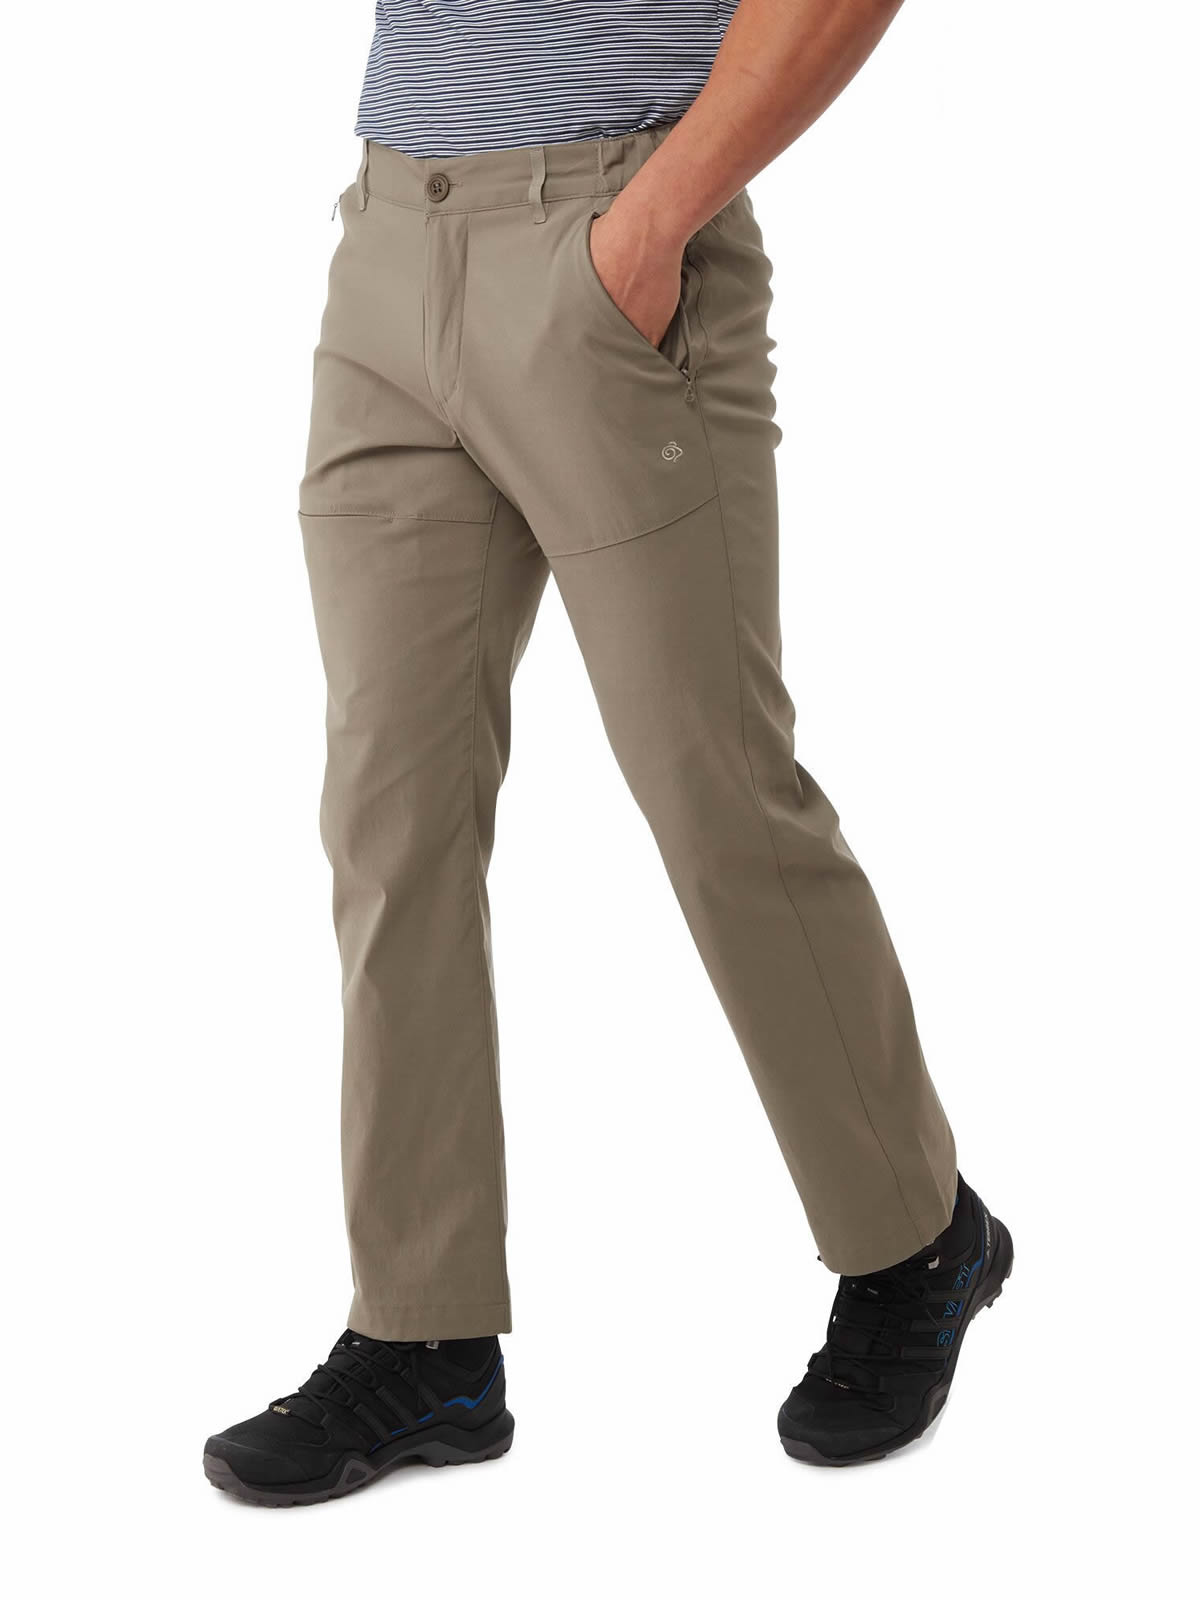 Craghoppers Men's Kiwi Pro Stretch Trousers (Short)